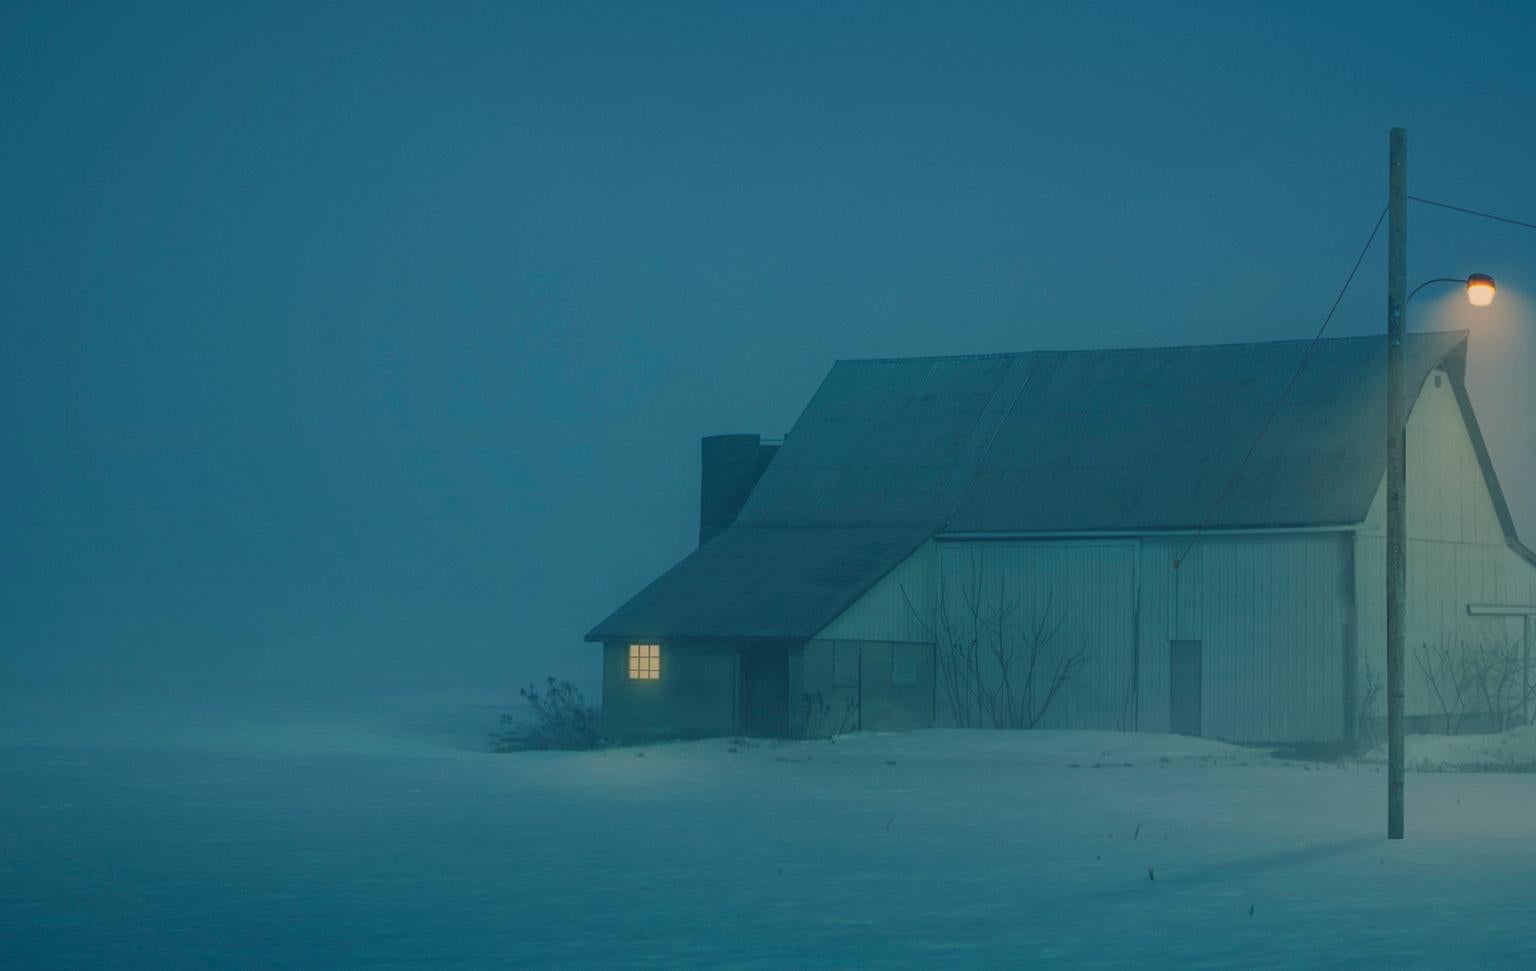 Hausarbeit am Morgen (Blau), Landscape Photograph, von Tyler Gray